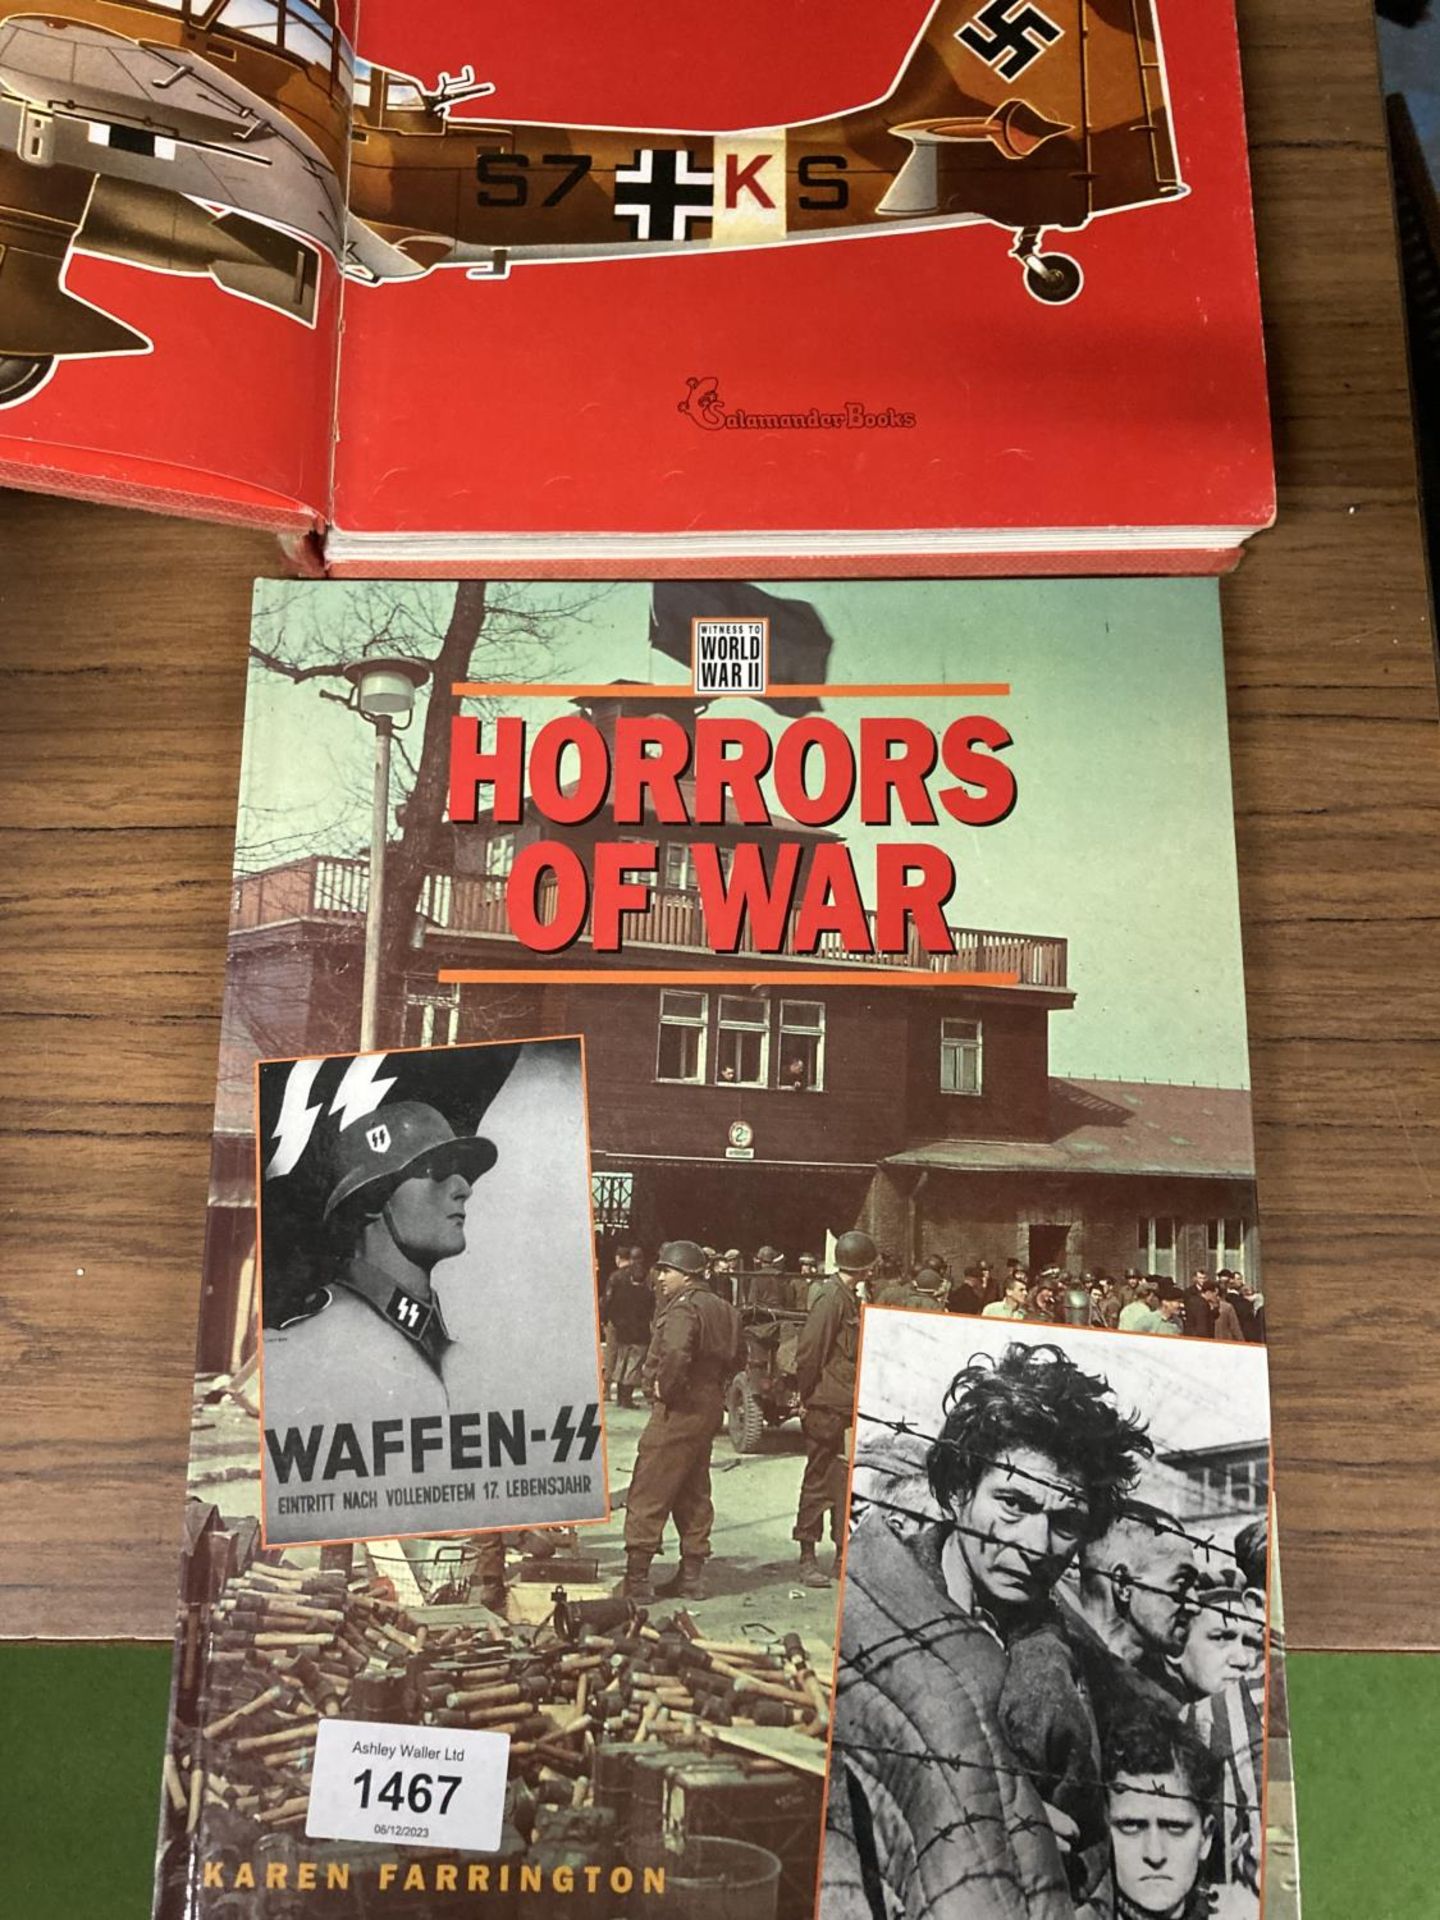 A WAFFEN HORRROS OF WAR WORLD WAR II BOOK AND HITLERS LUFTWAFFE BOOK - Image 3 of 3